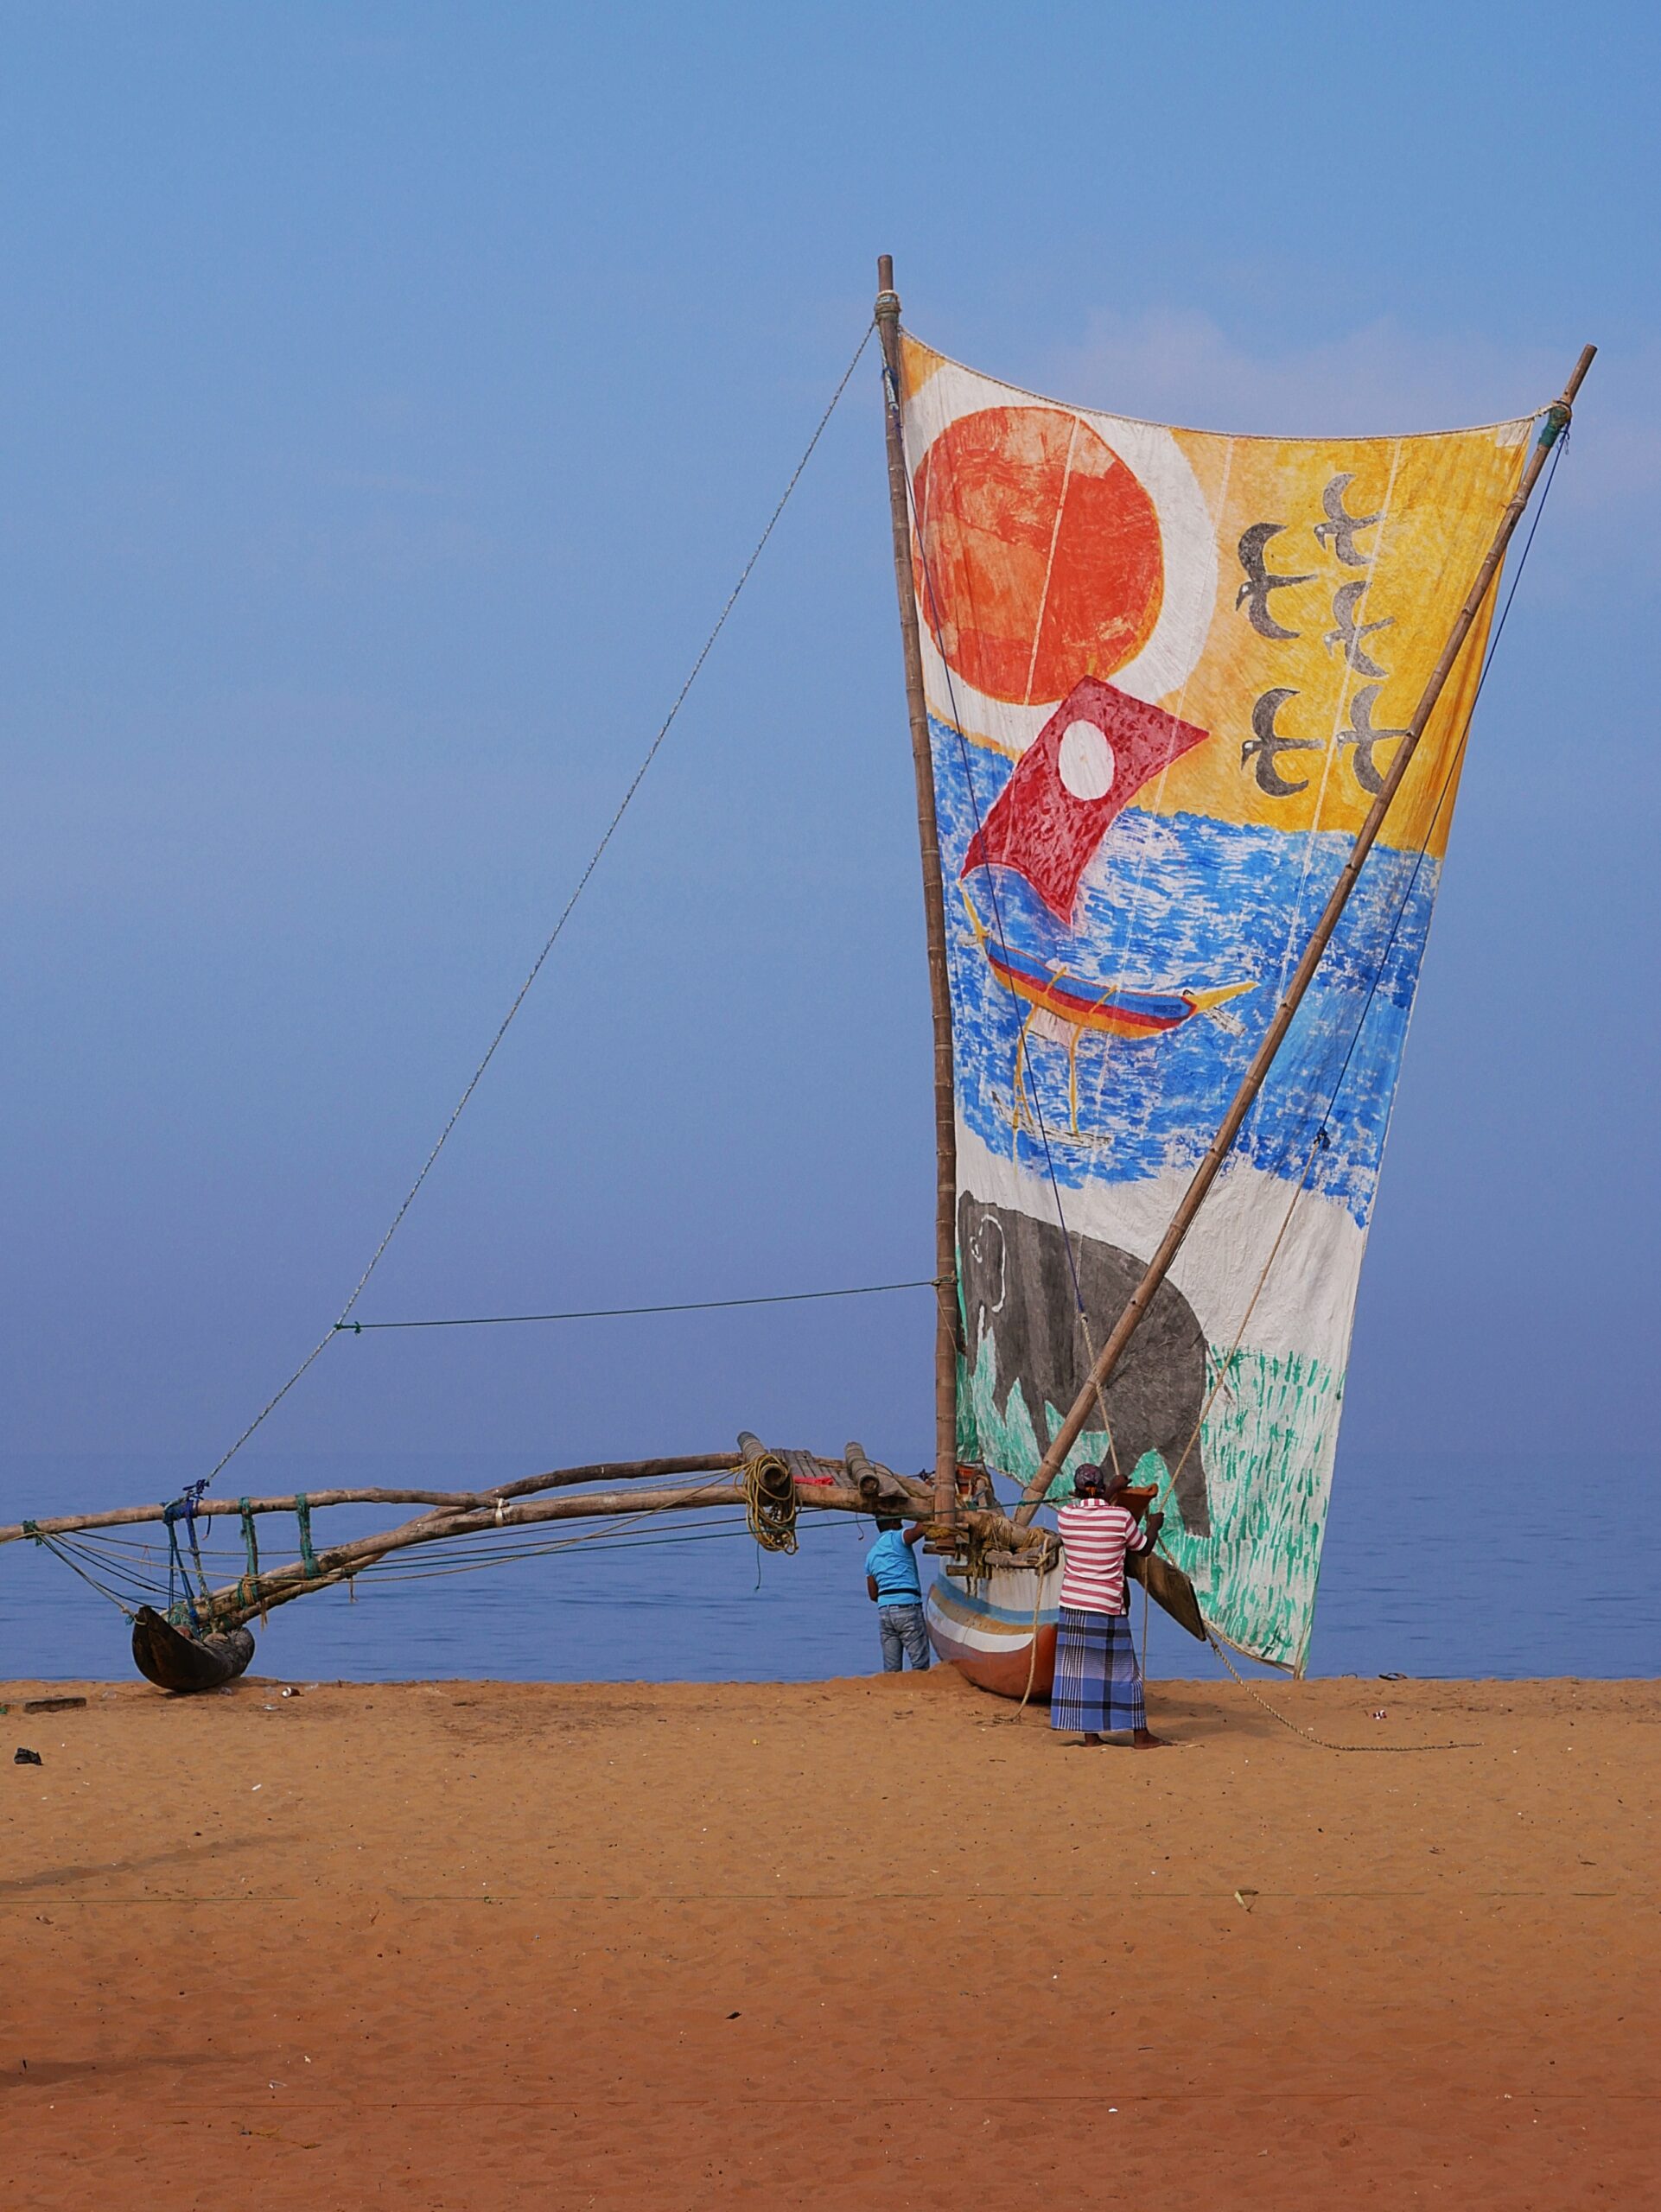 Sri Lankan men launch their sailing boat.